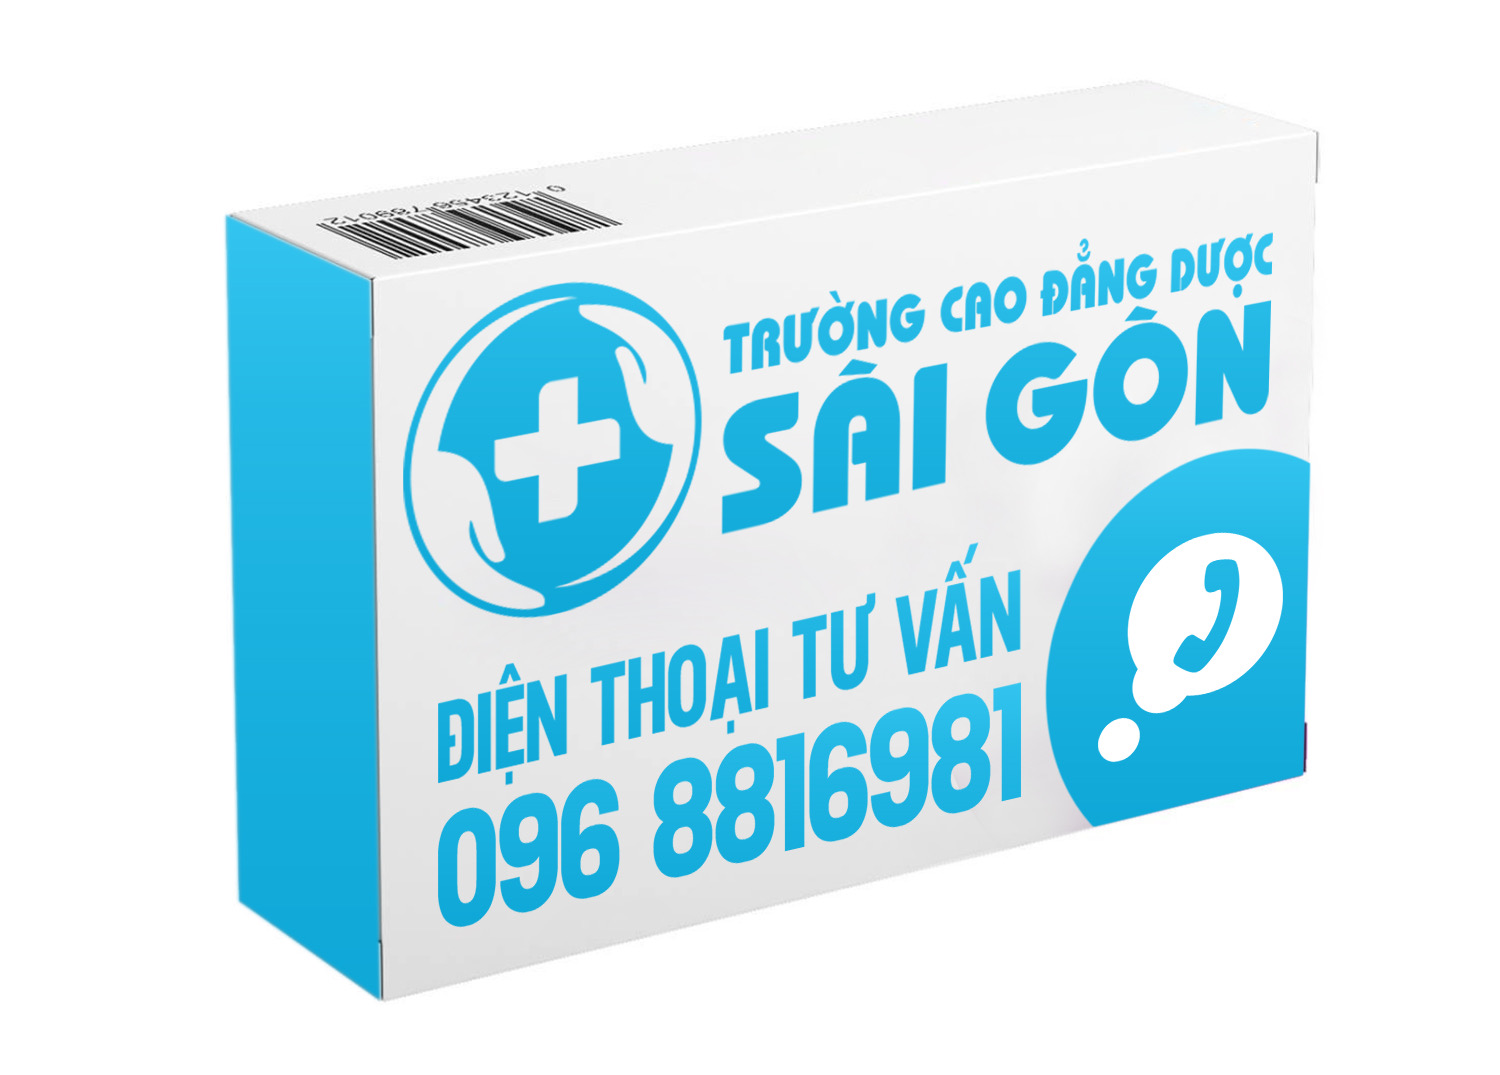 Chuyên gia Xét nghiệm Sài Gòn chia sẻ thông tin căn bệnh Thalassemia